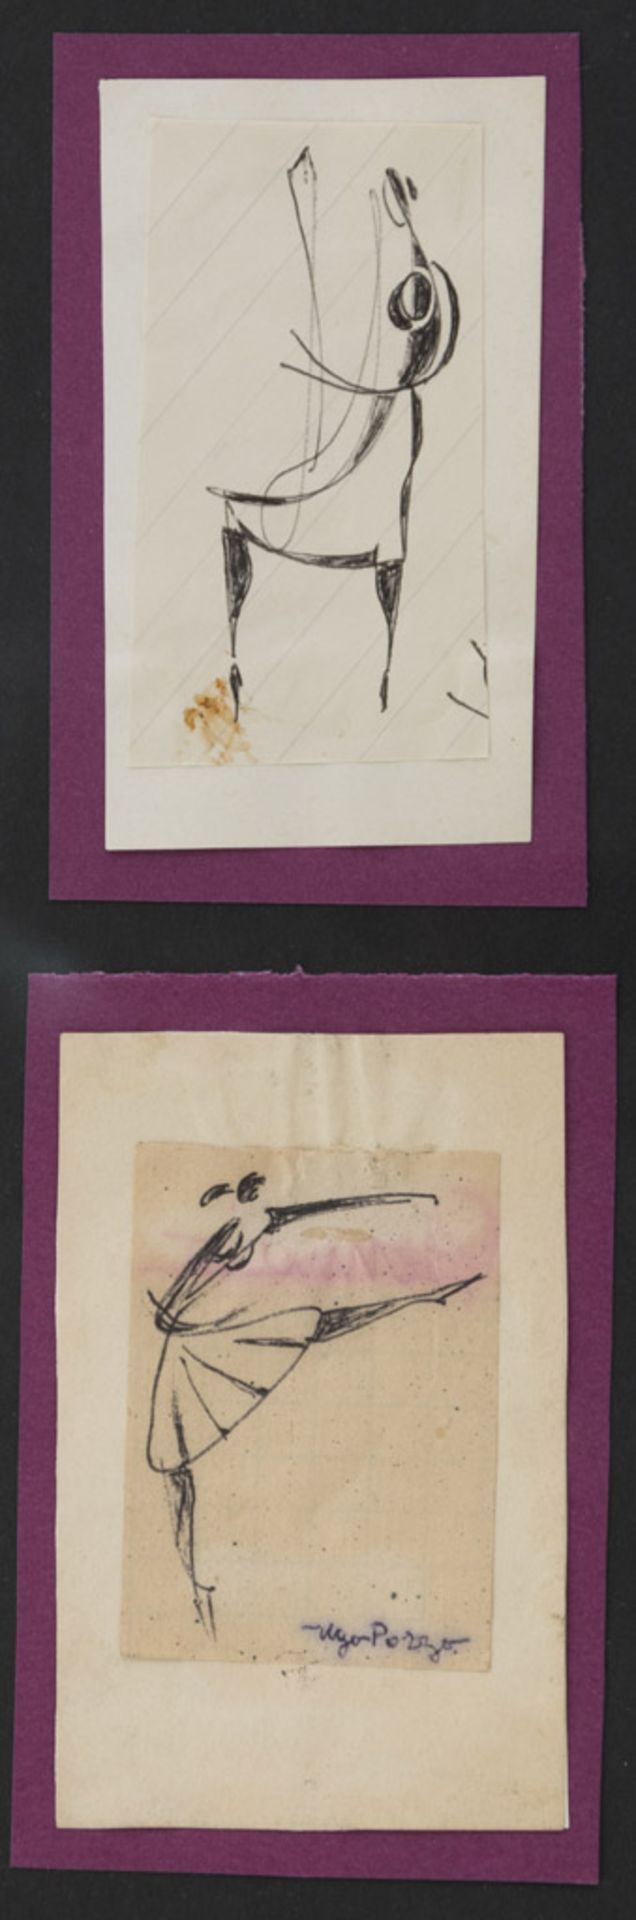 UGO POZZO (Torino 1900 - 1981) Danzatrici, anni '30 Inchiostro e collage su carta Misure del foglio,